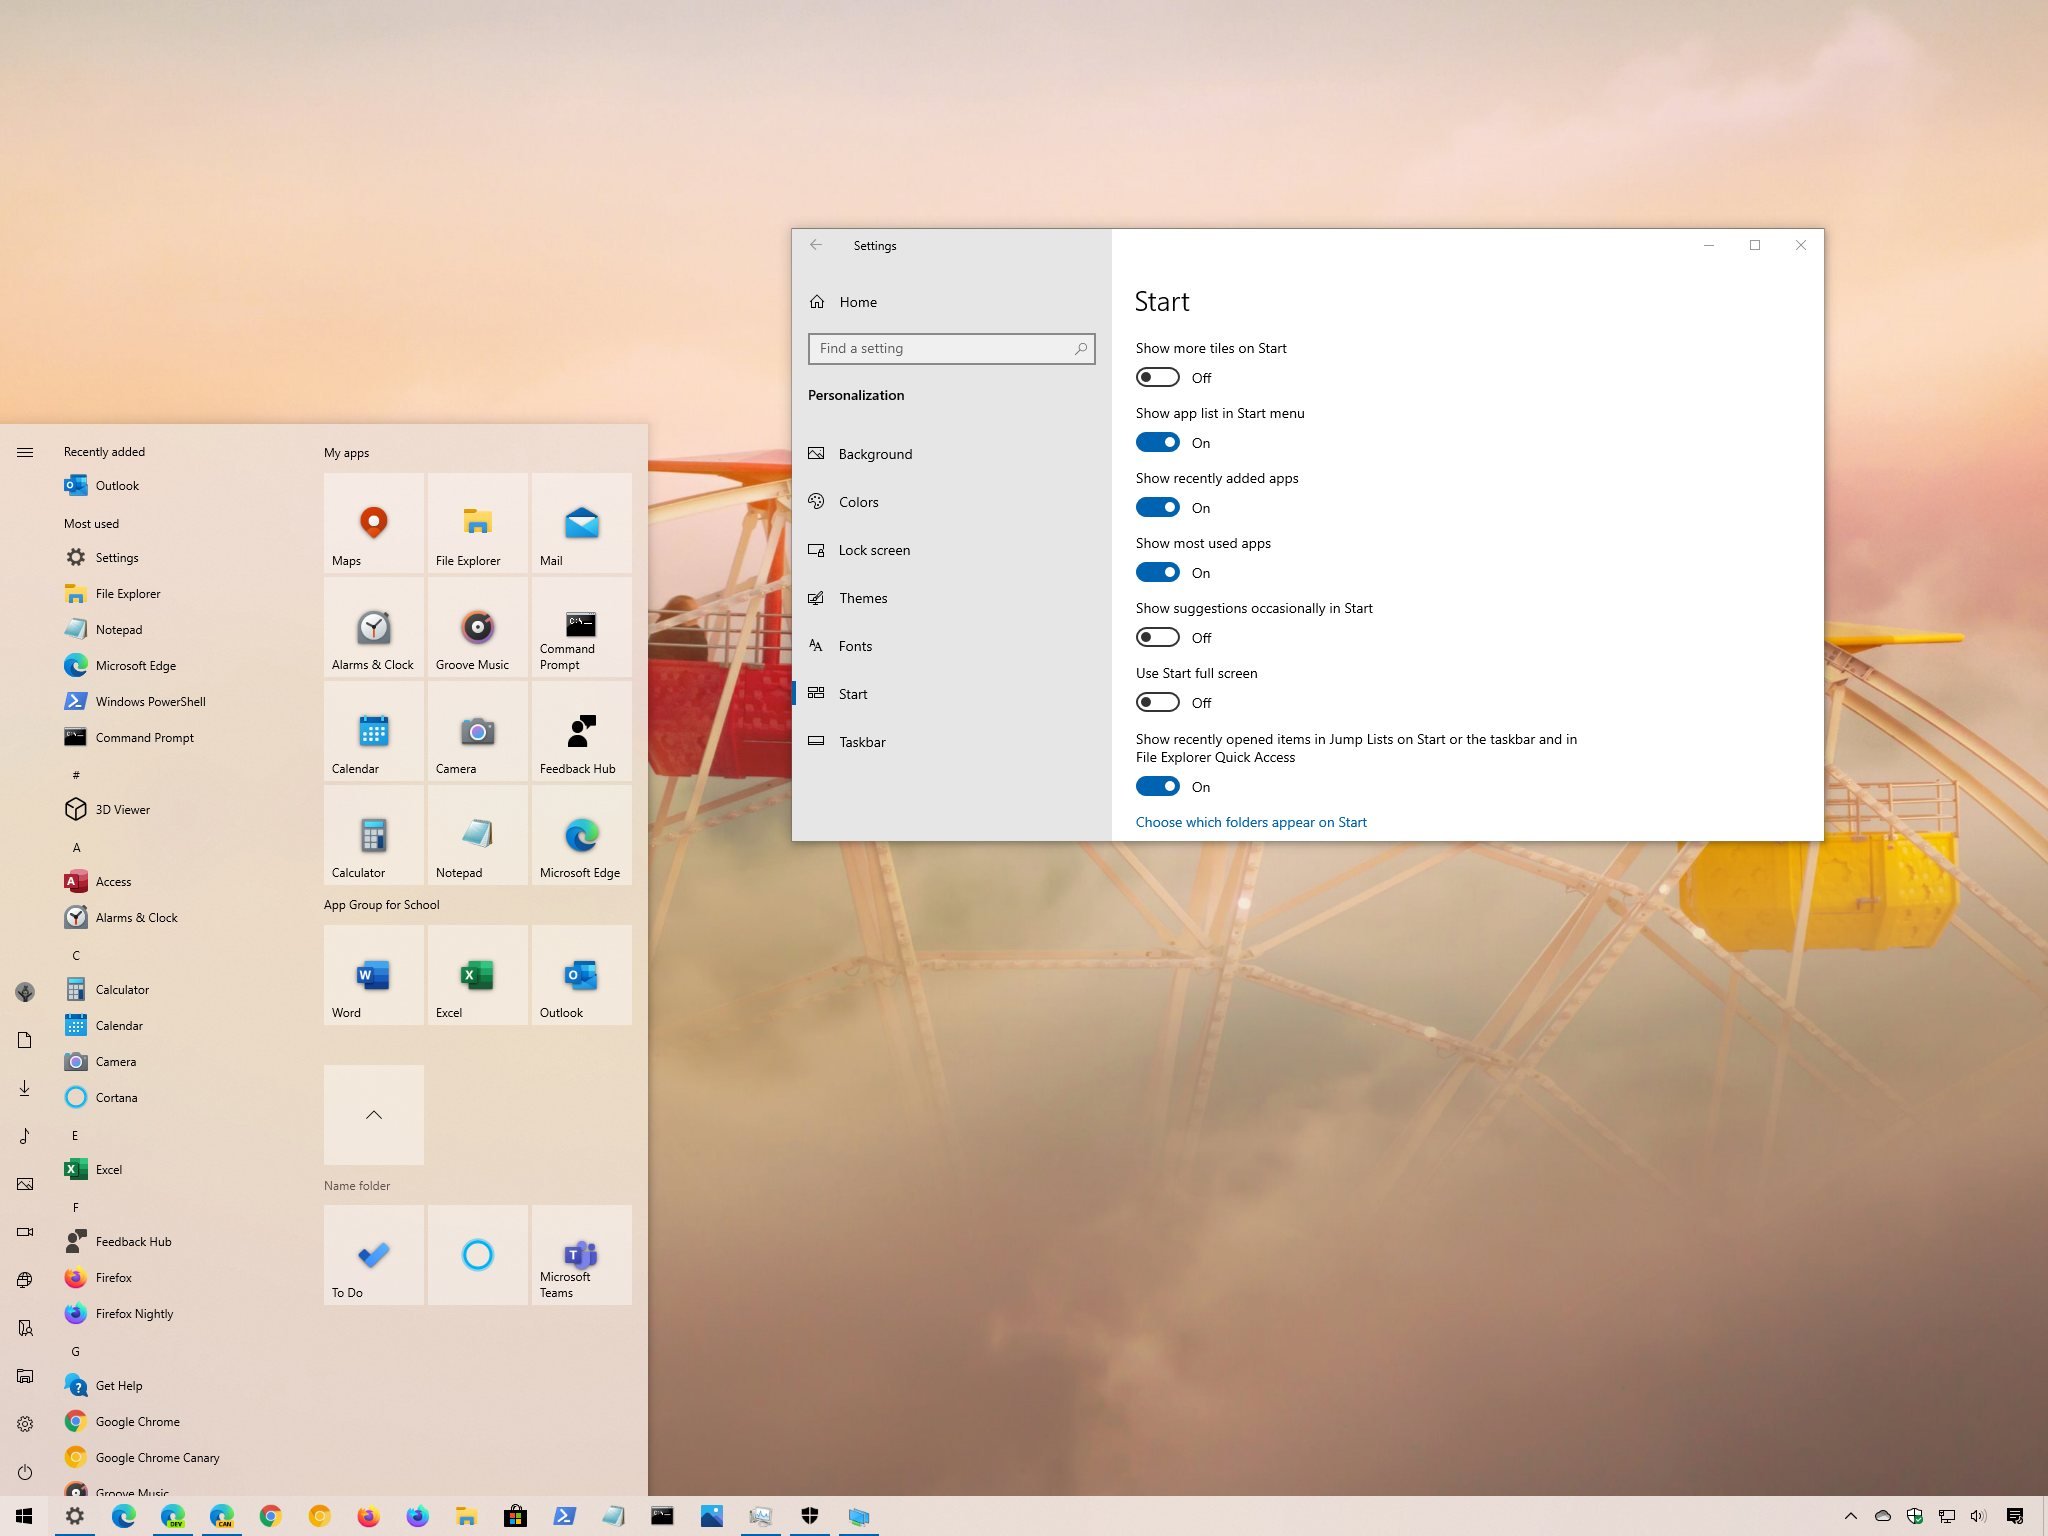 Tùy chỉnh Menu Start trên Windows 10 | Windows Central: Bạn có thể tùy chỉnh nội dung và thiết lập của Menu Start trên Windows 10 để thích hợp với nhu cầu của mình. Tải hình ảnh liên quan để xem hướng dẫn từ Windows Central và bắt đầu tùy chỉnh menu Start của bạn ngay hôm nay!